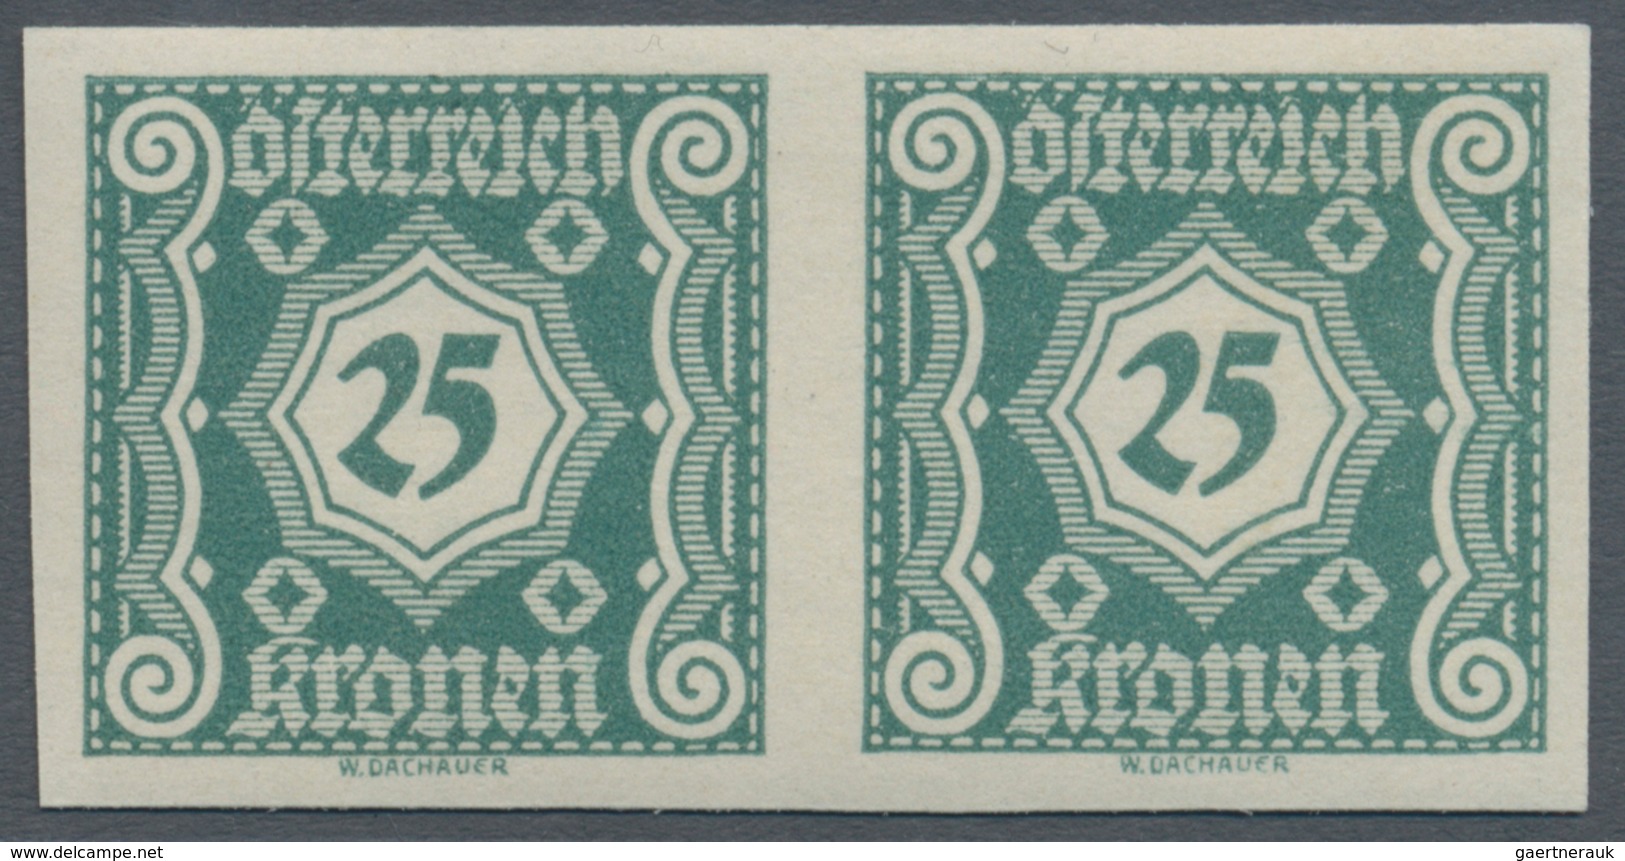 Österreich - Portomarken: 1922, Ziffern, komplette Serie von 15 Werten in ungezähnten waagerechten P